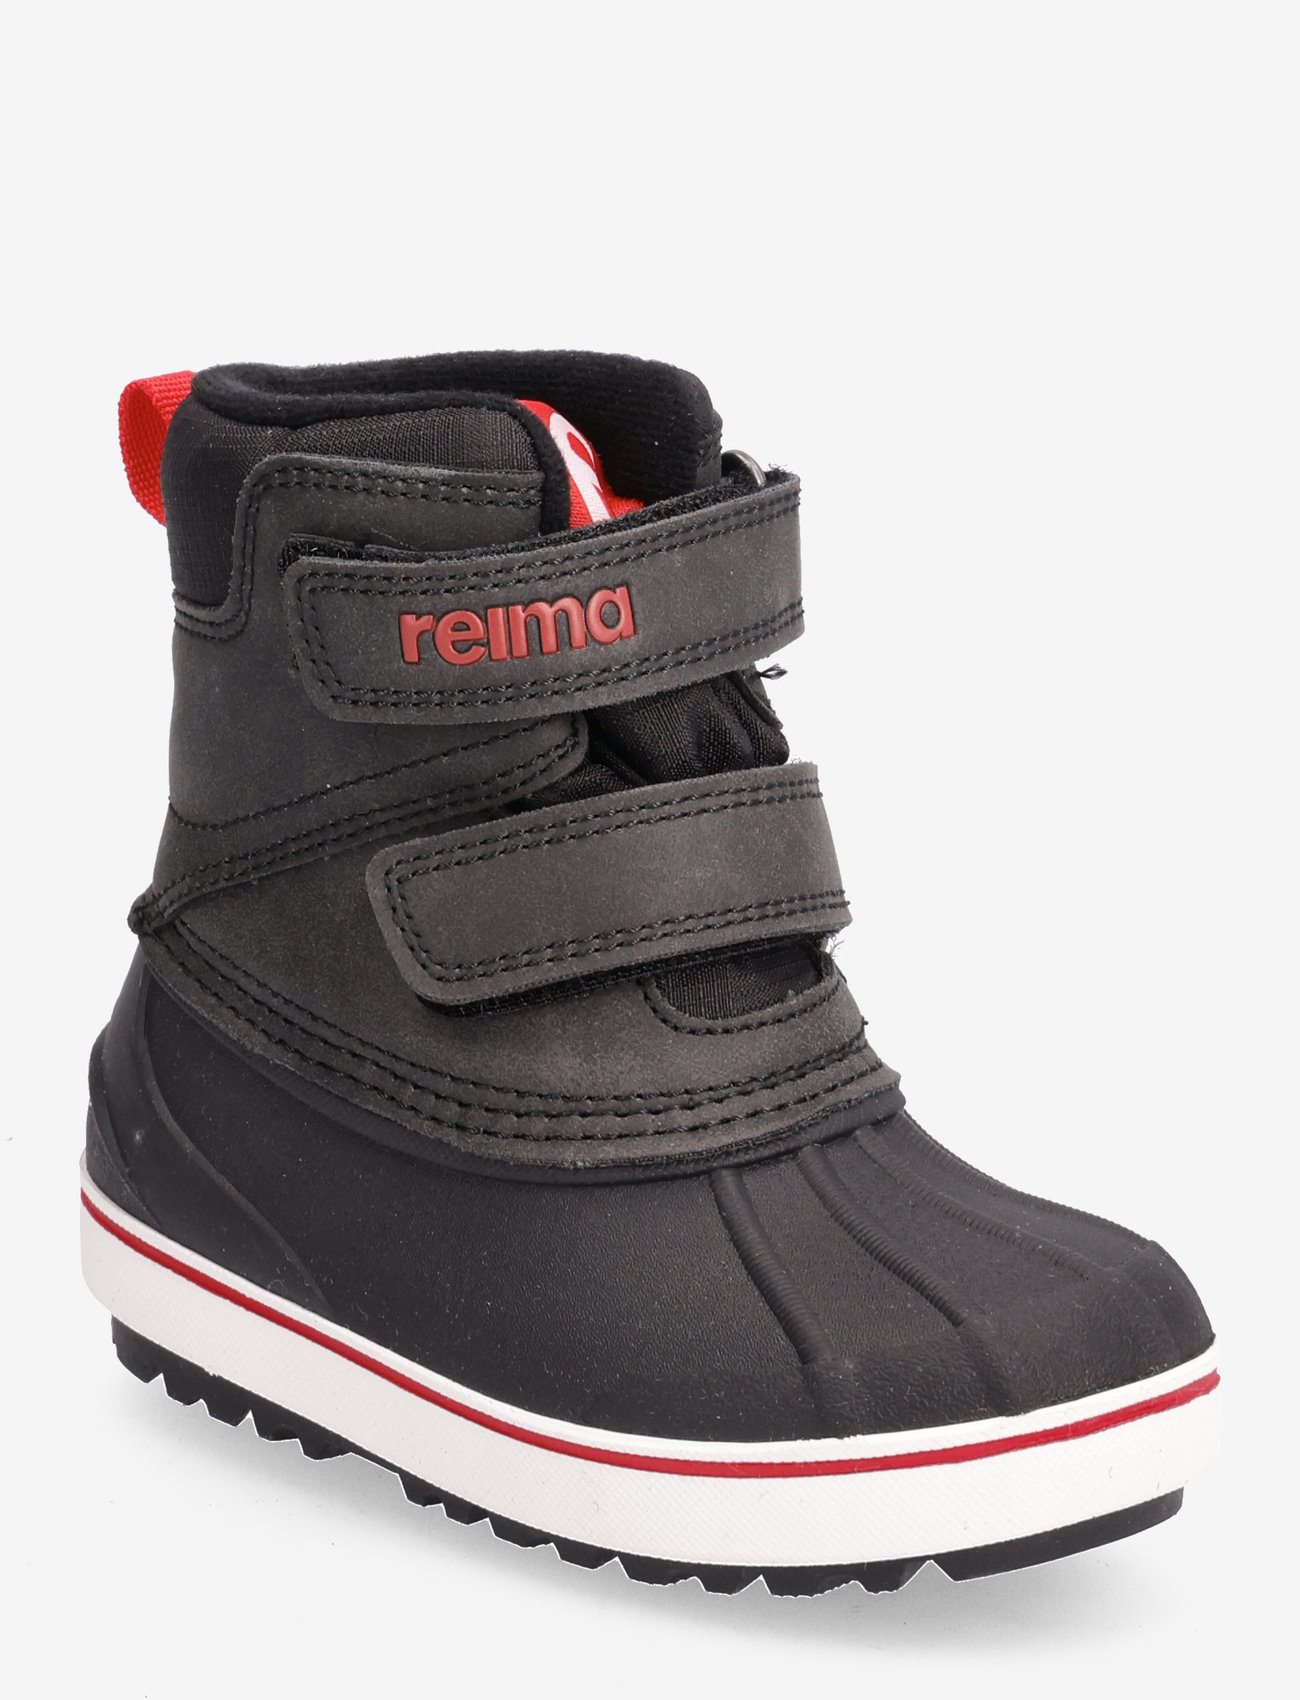 Reima - Winter boots, Coconi - schuhe - black - 0